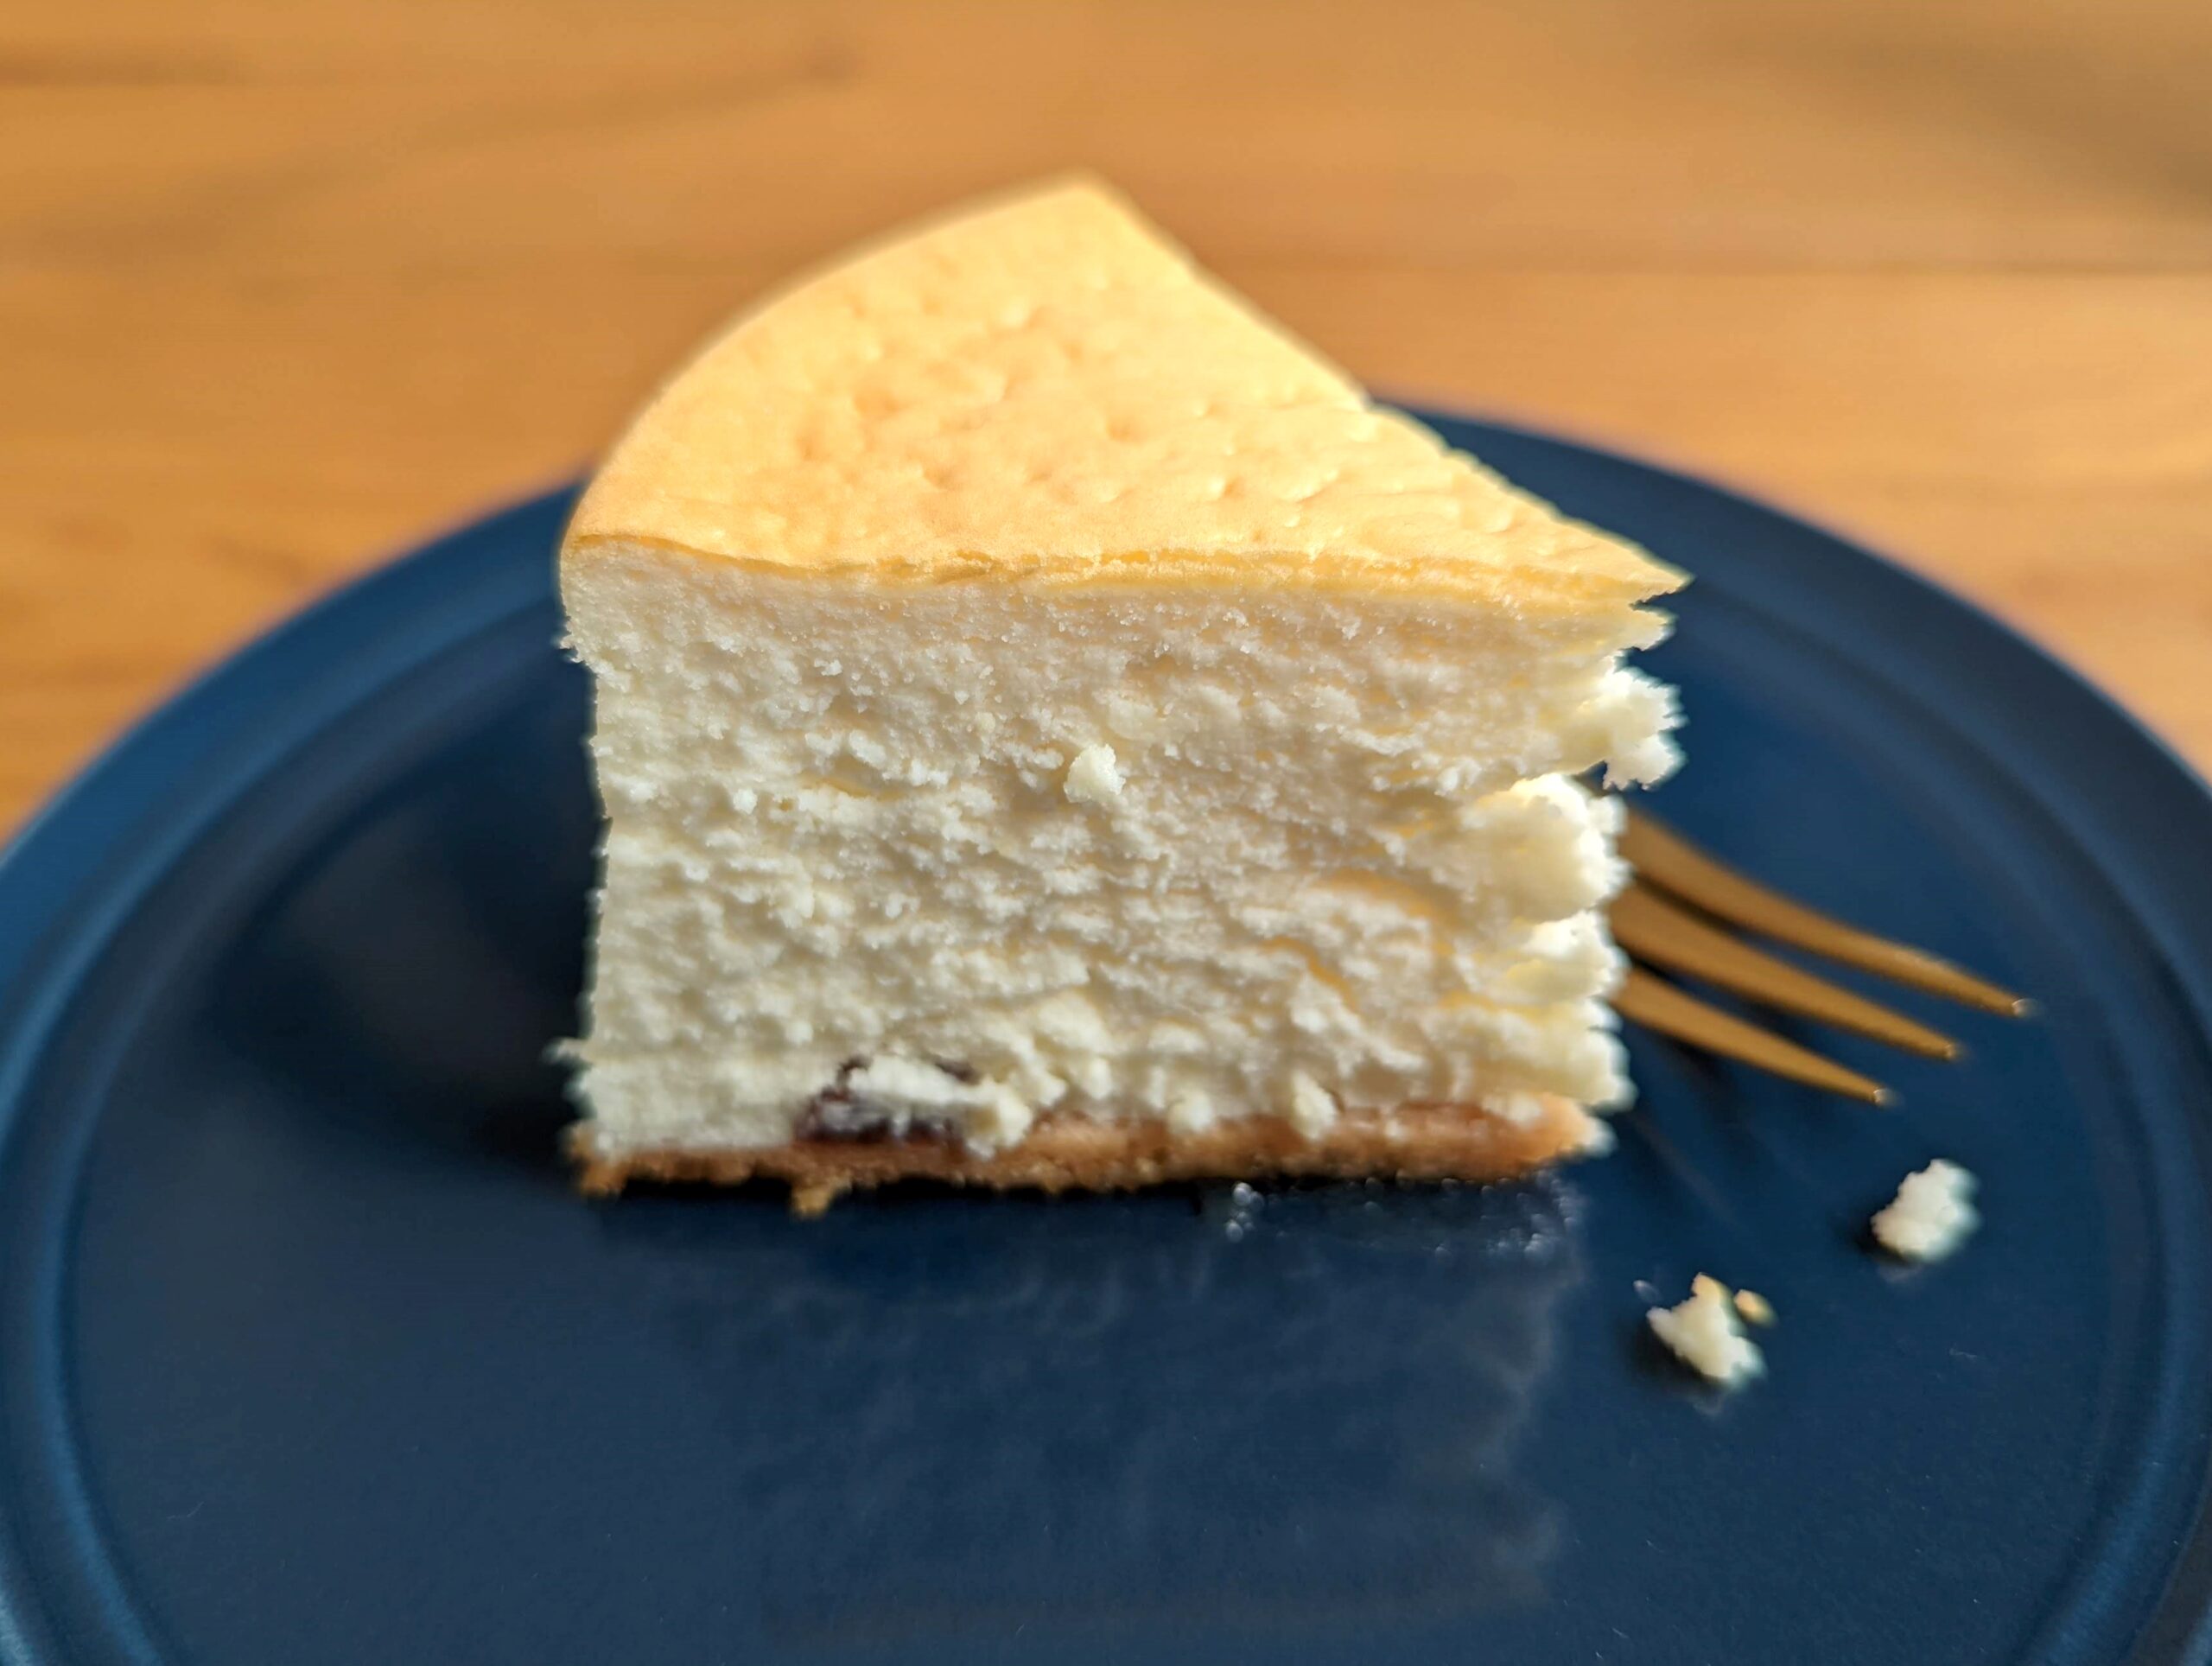 トシヨロイヅカ「親父のチーズケーキと呼ばせてください」 (1)